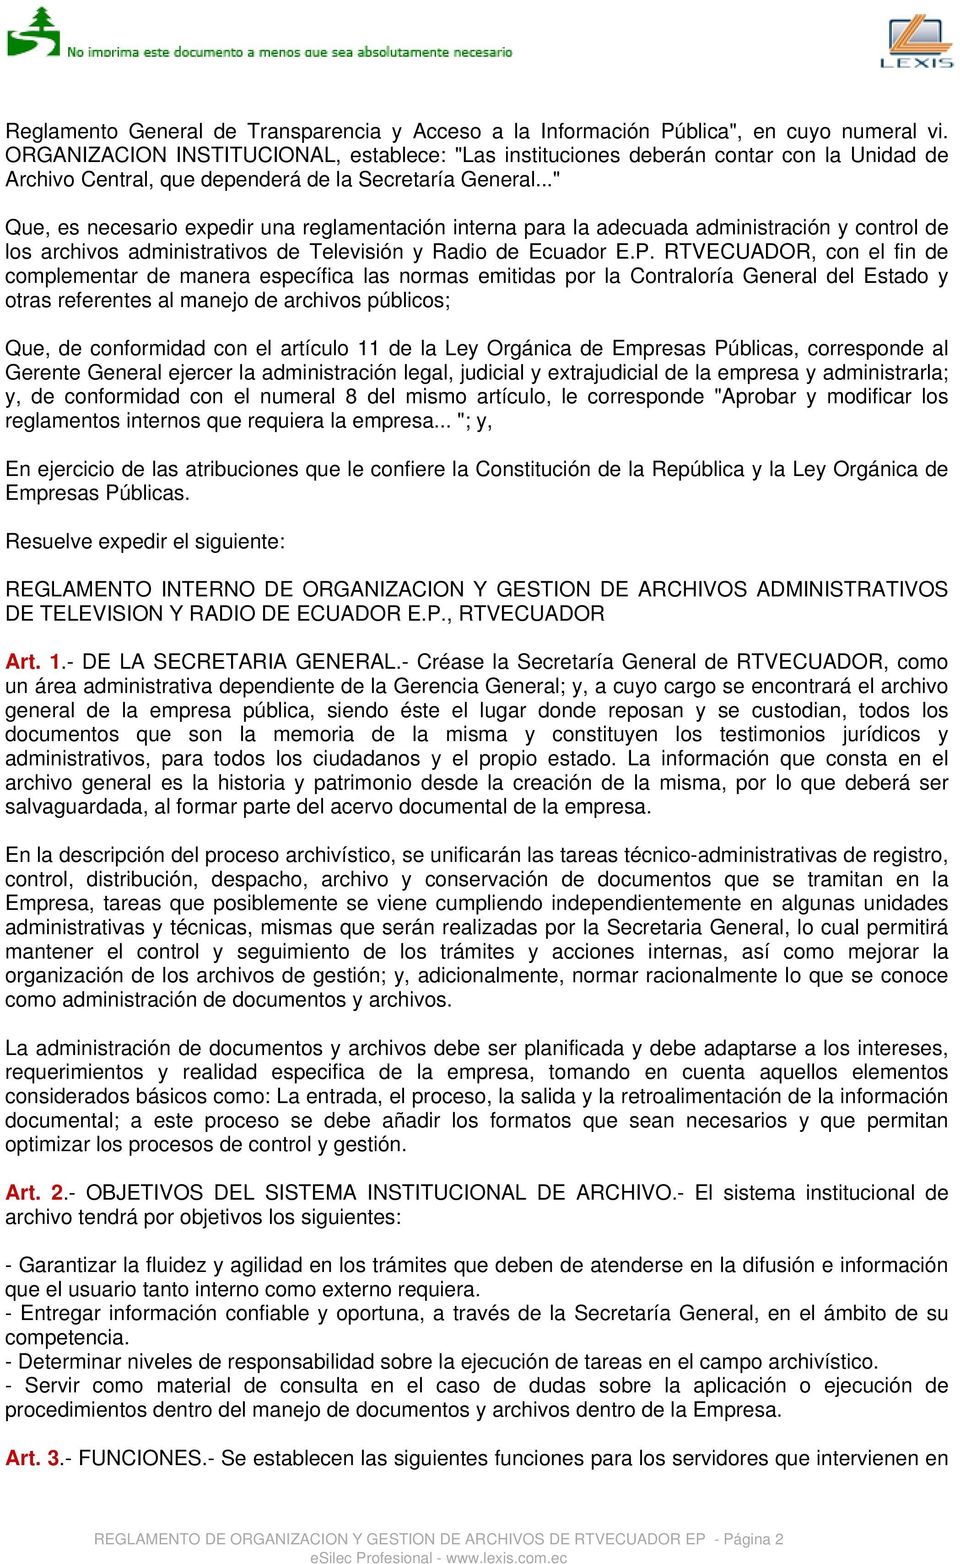 .." Que, es necesario expedir una reglamentación interna para la adecuada administración y control de los archivos administrativos de Televisión y Radio de Ecuador E.P.